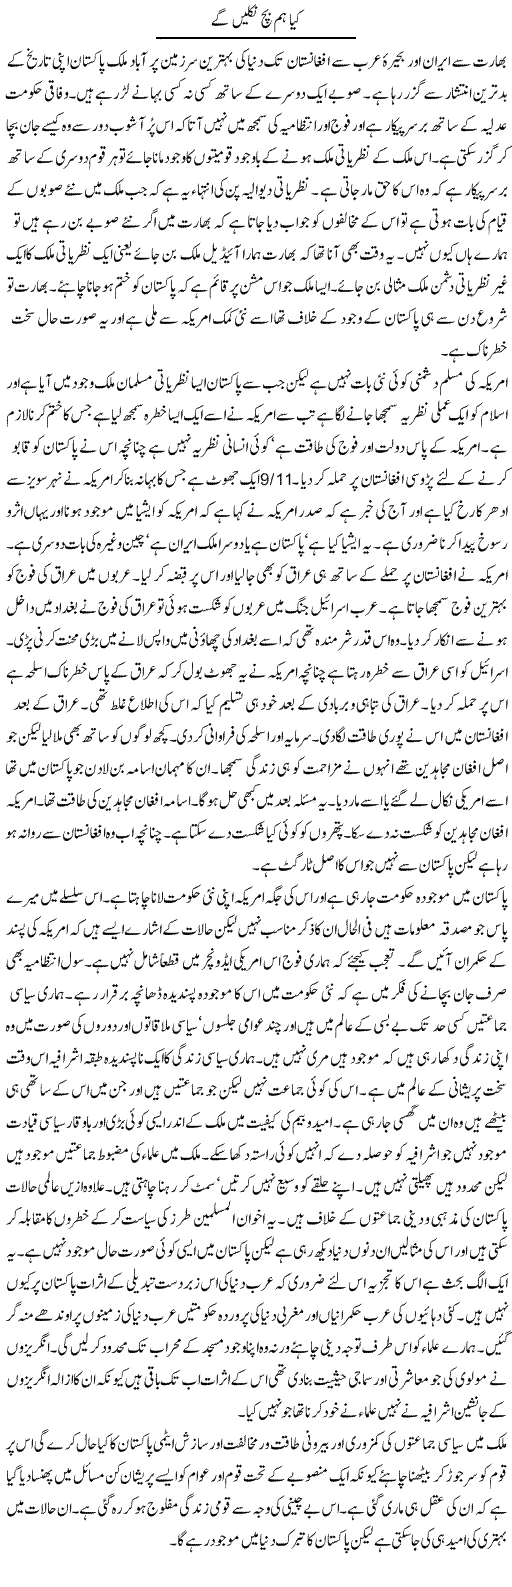 Pakistan's Situation Express Column Abdul Qadir 8 January 2012